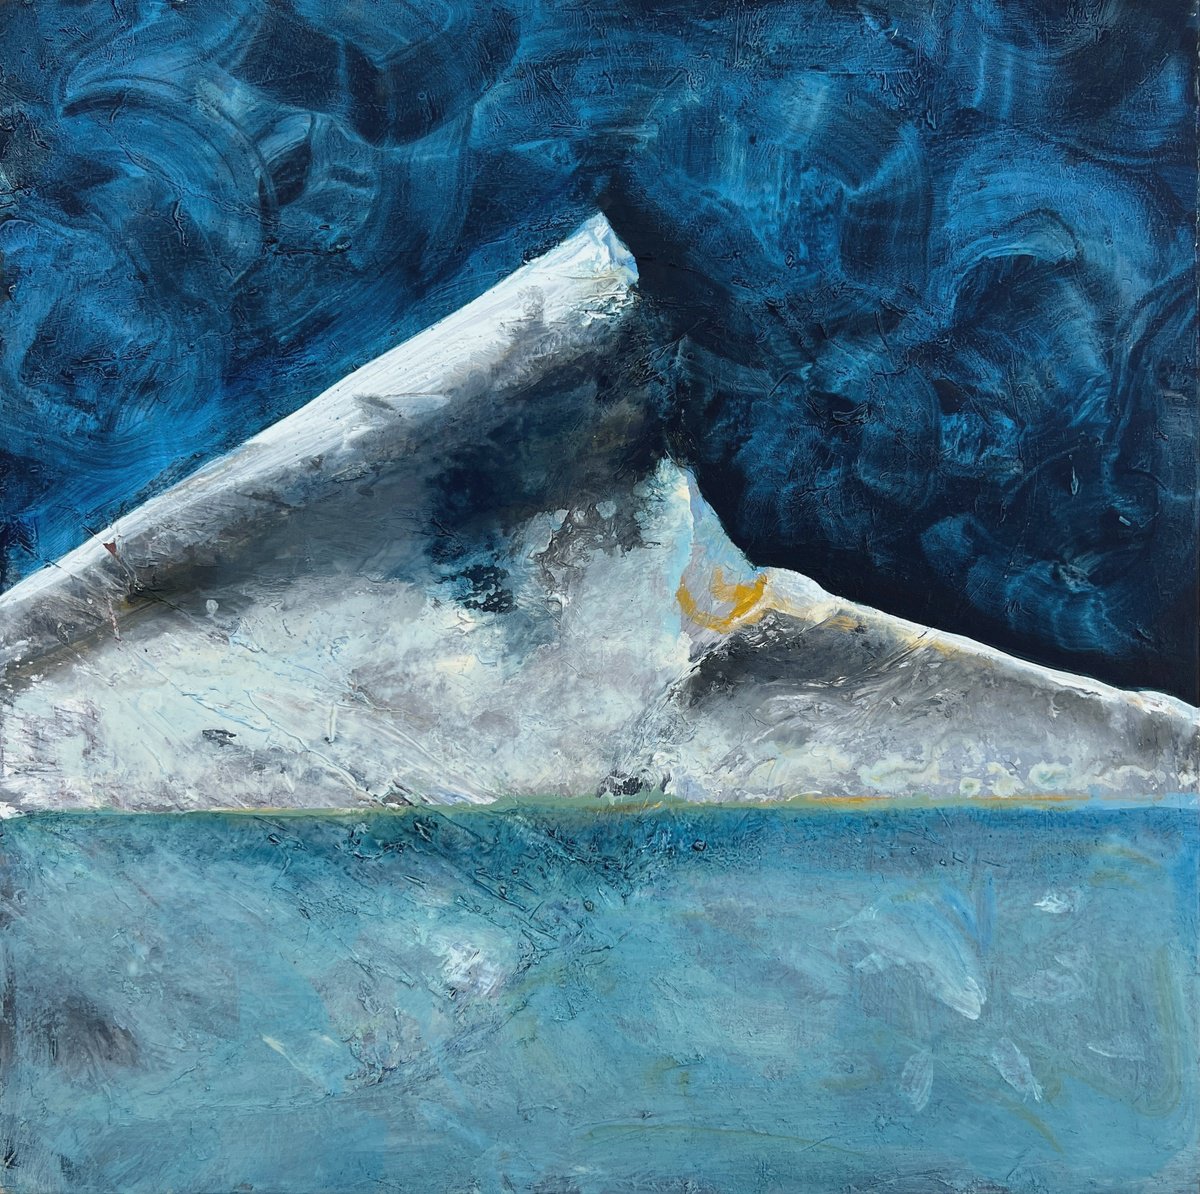 Tip of the Iceberg by Zakhar Shevchuk